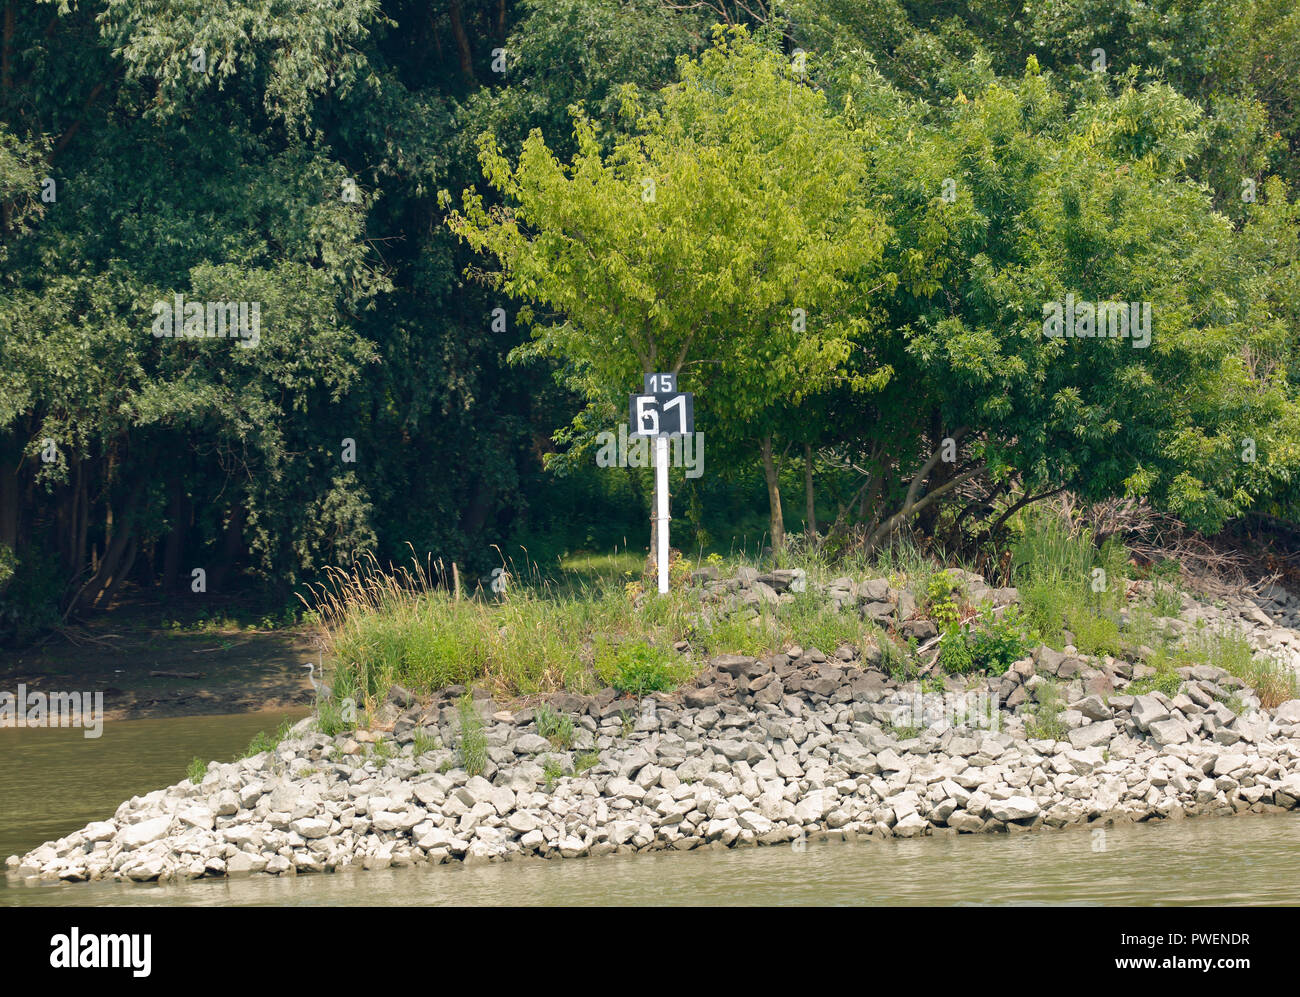 Signe de l'information, le kilométrage du Danube, rivière 1561 kilomètres de gauche à l'embouchure du Danube, la navigation, la rive du Danube, rivière paysage près de Dunafoeldvar, Hongrie, le sud de la Hongrie, la plaine pannonienne, le sud de Grande Plaine hongroise, dans le sud de Dobroudja, Tolna County Banque D'Images